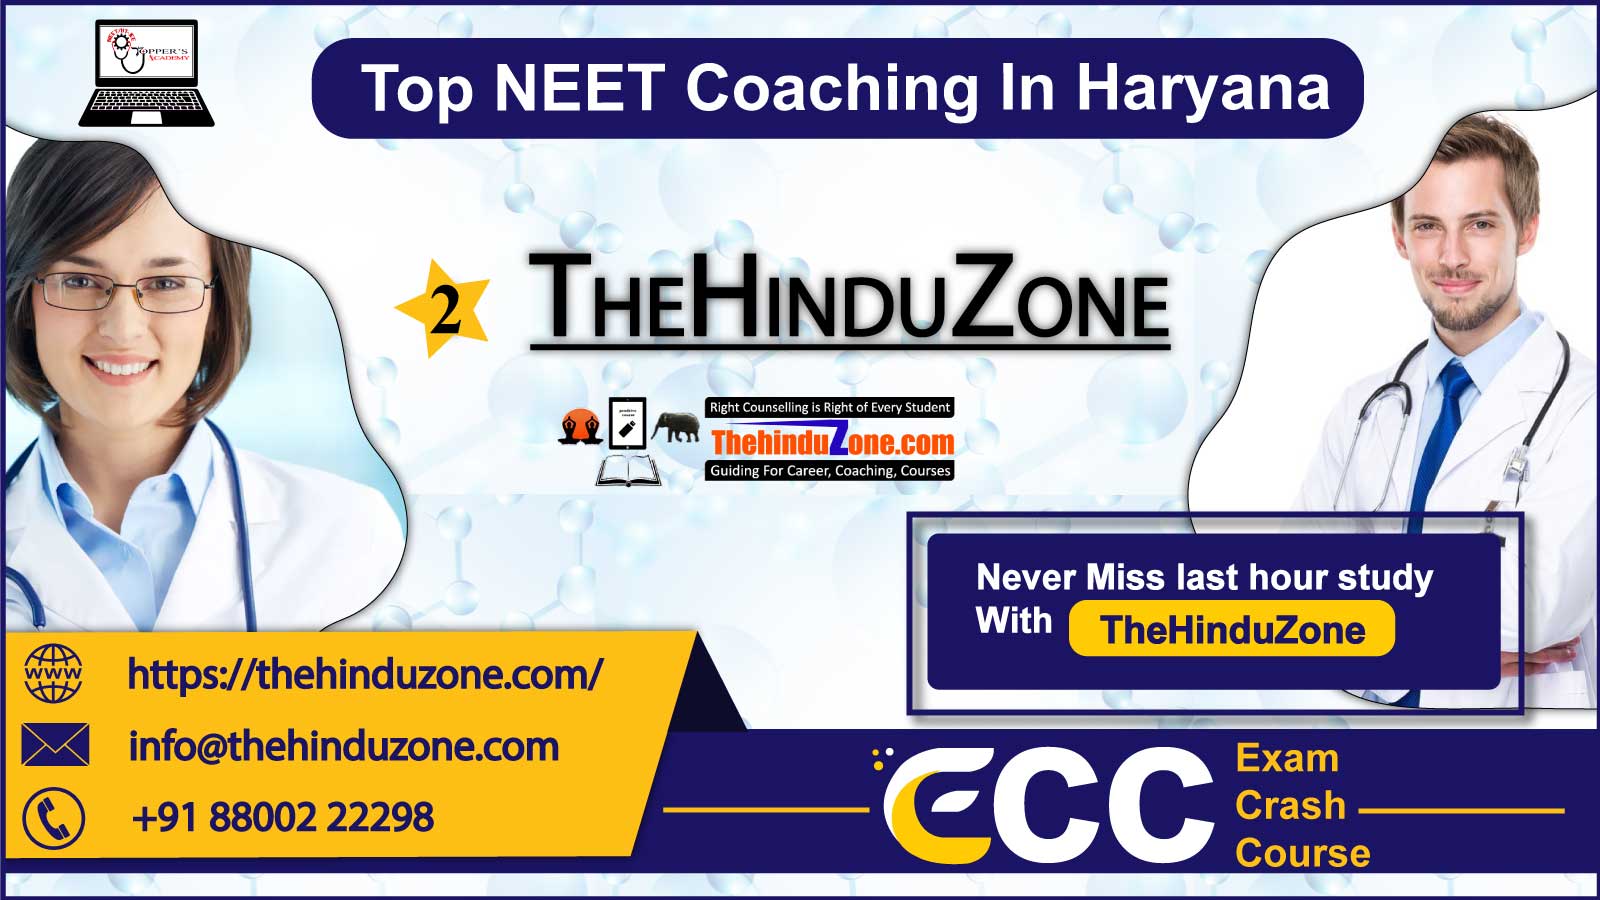 TheHinduZone NEET Coaching in Haryana